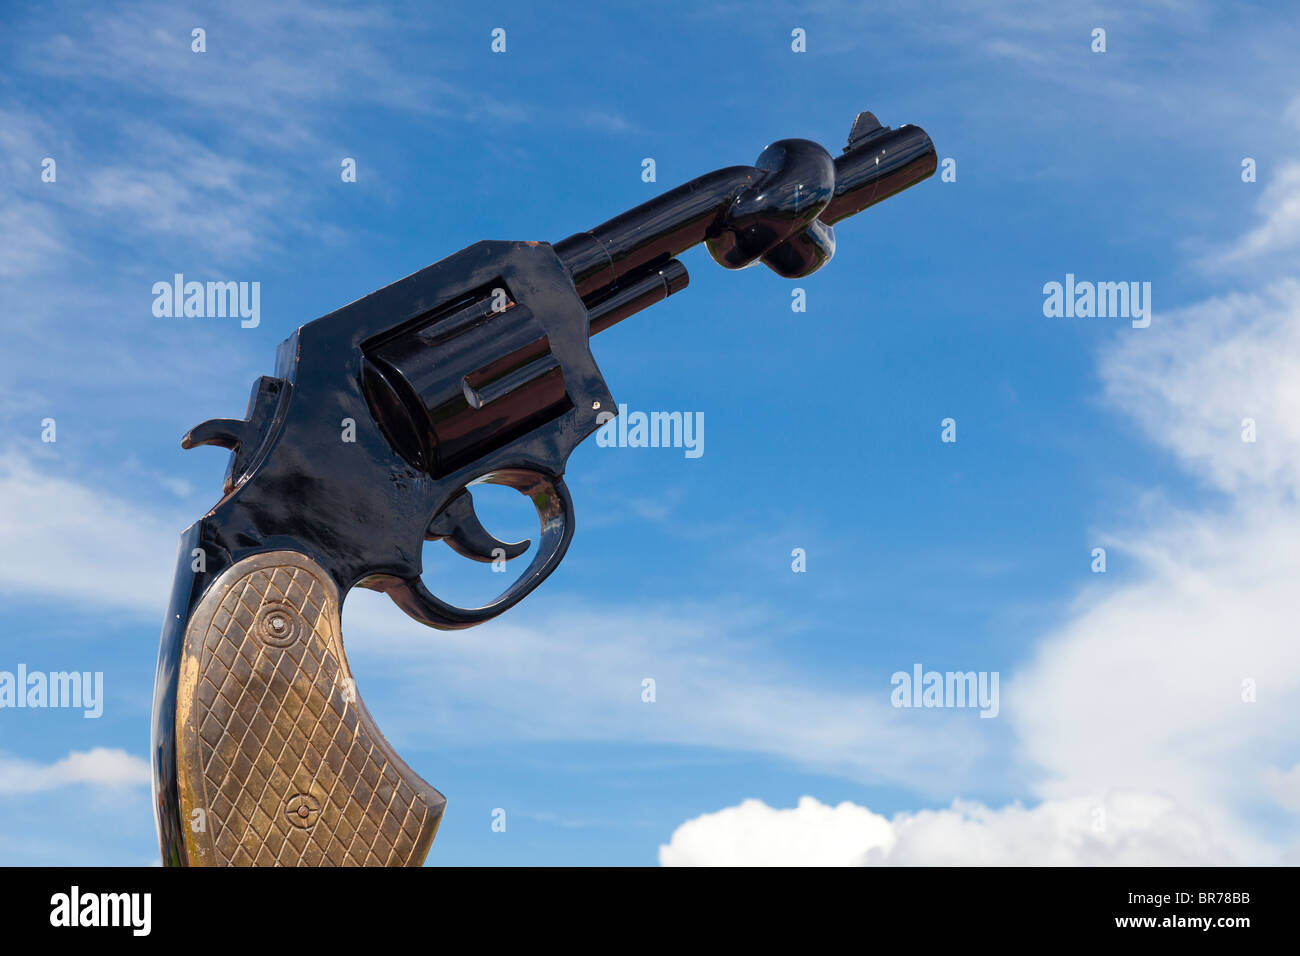 Sculpture d'un pistolet avec un canon noué symbolisant la fin de la violence - Phnom Penh, Cambodge Banque D'Images